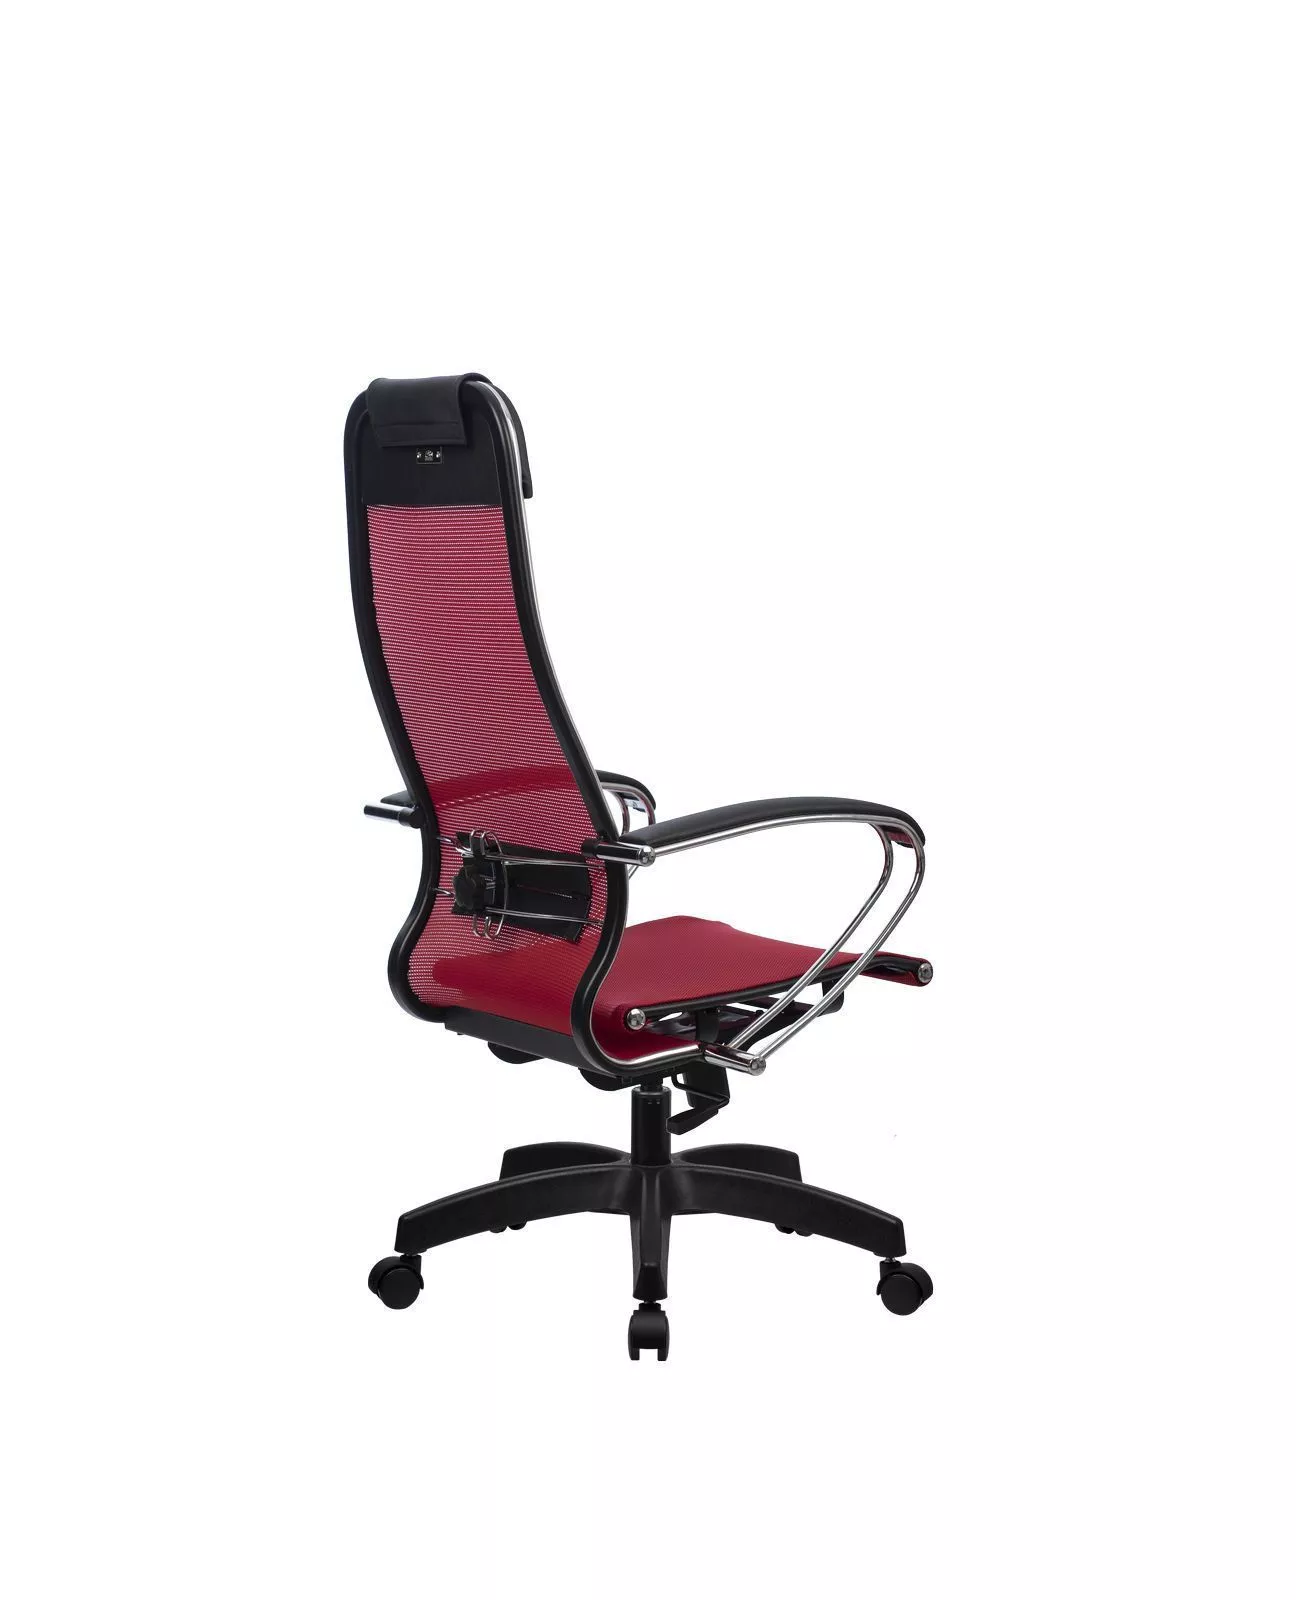 Кресло компьютерное Метта Комплект 12 Pl красный